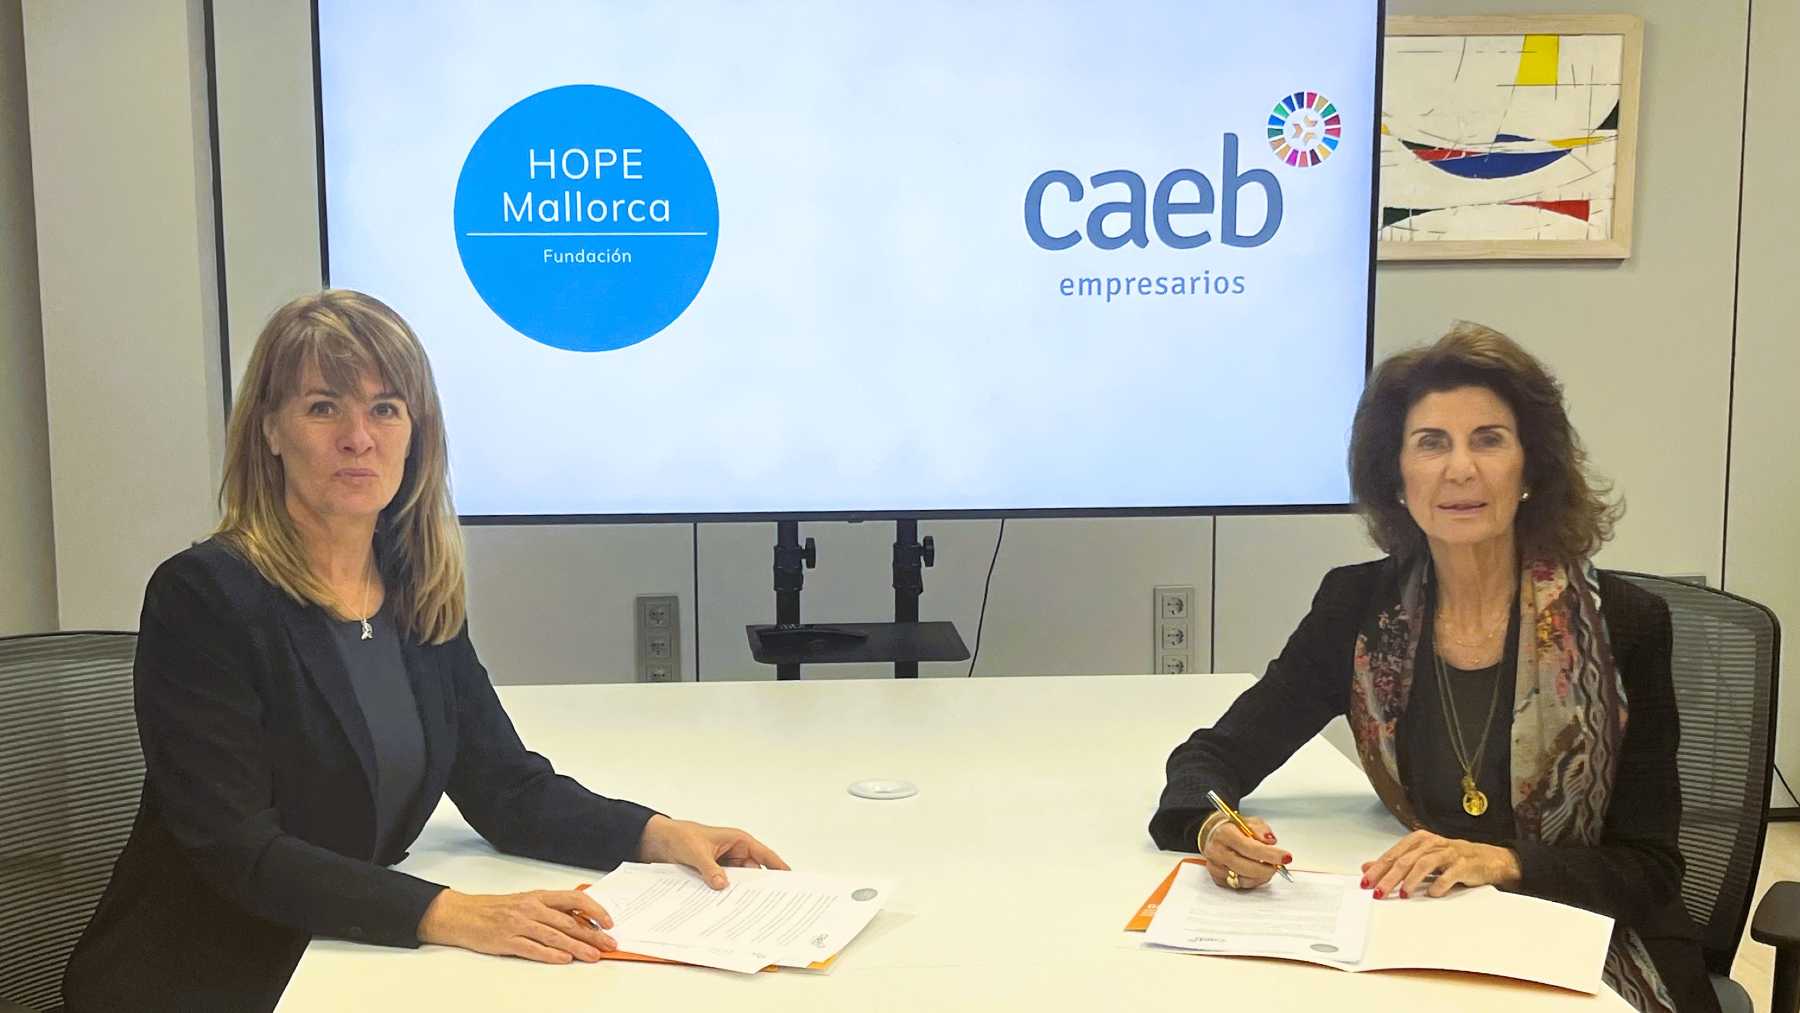 CAEB promueve la colaboración empresarial con la Fundación HOPE Mallorca.